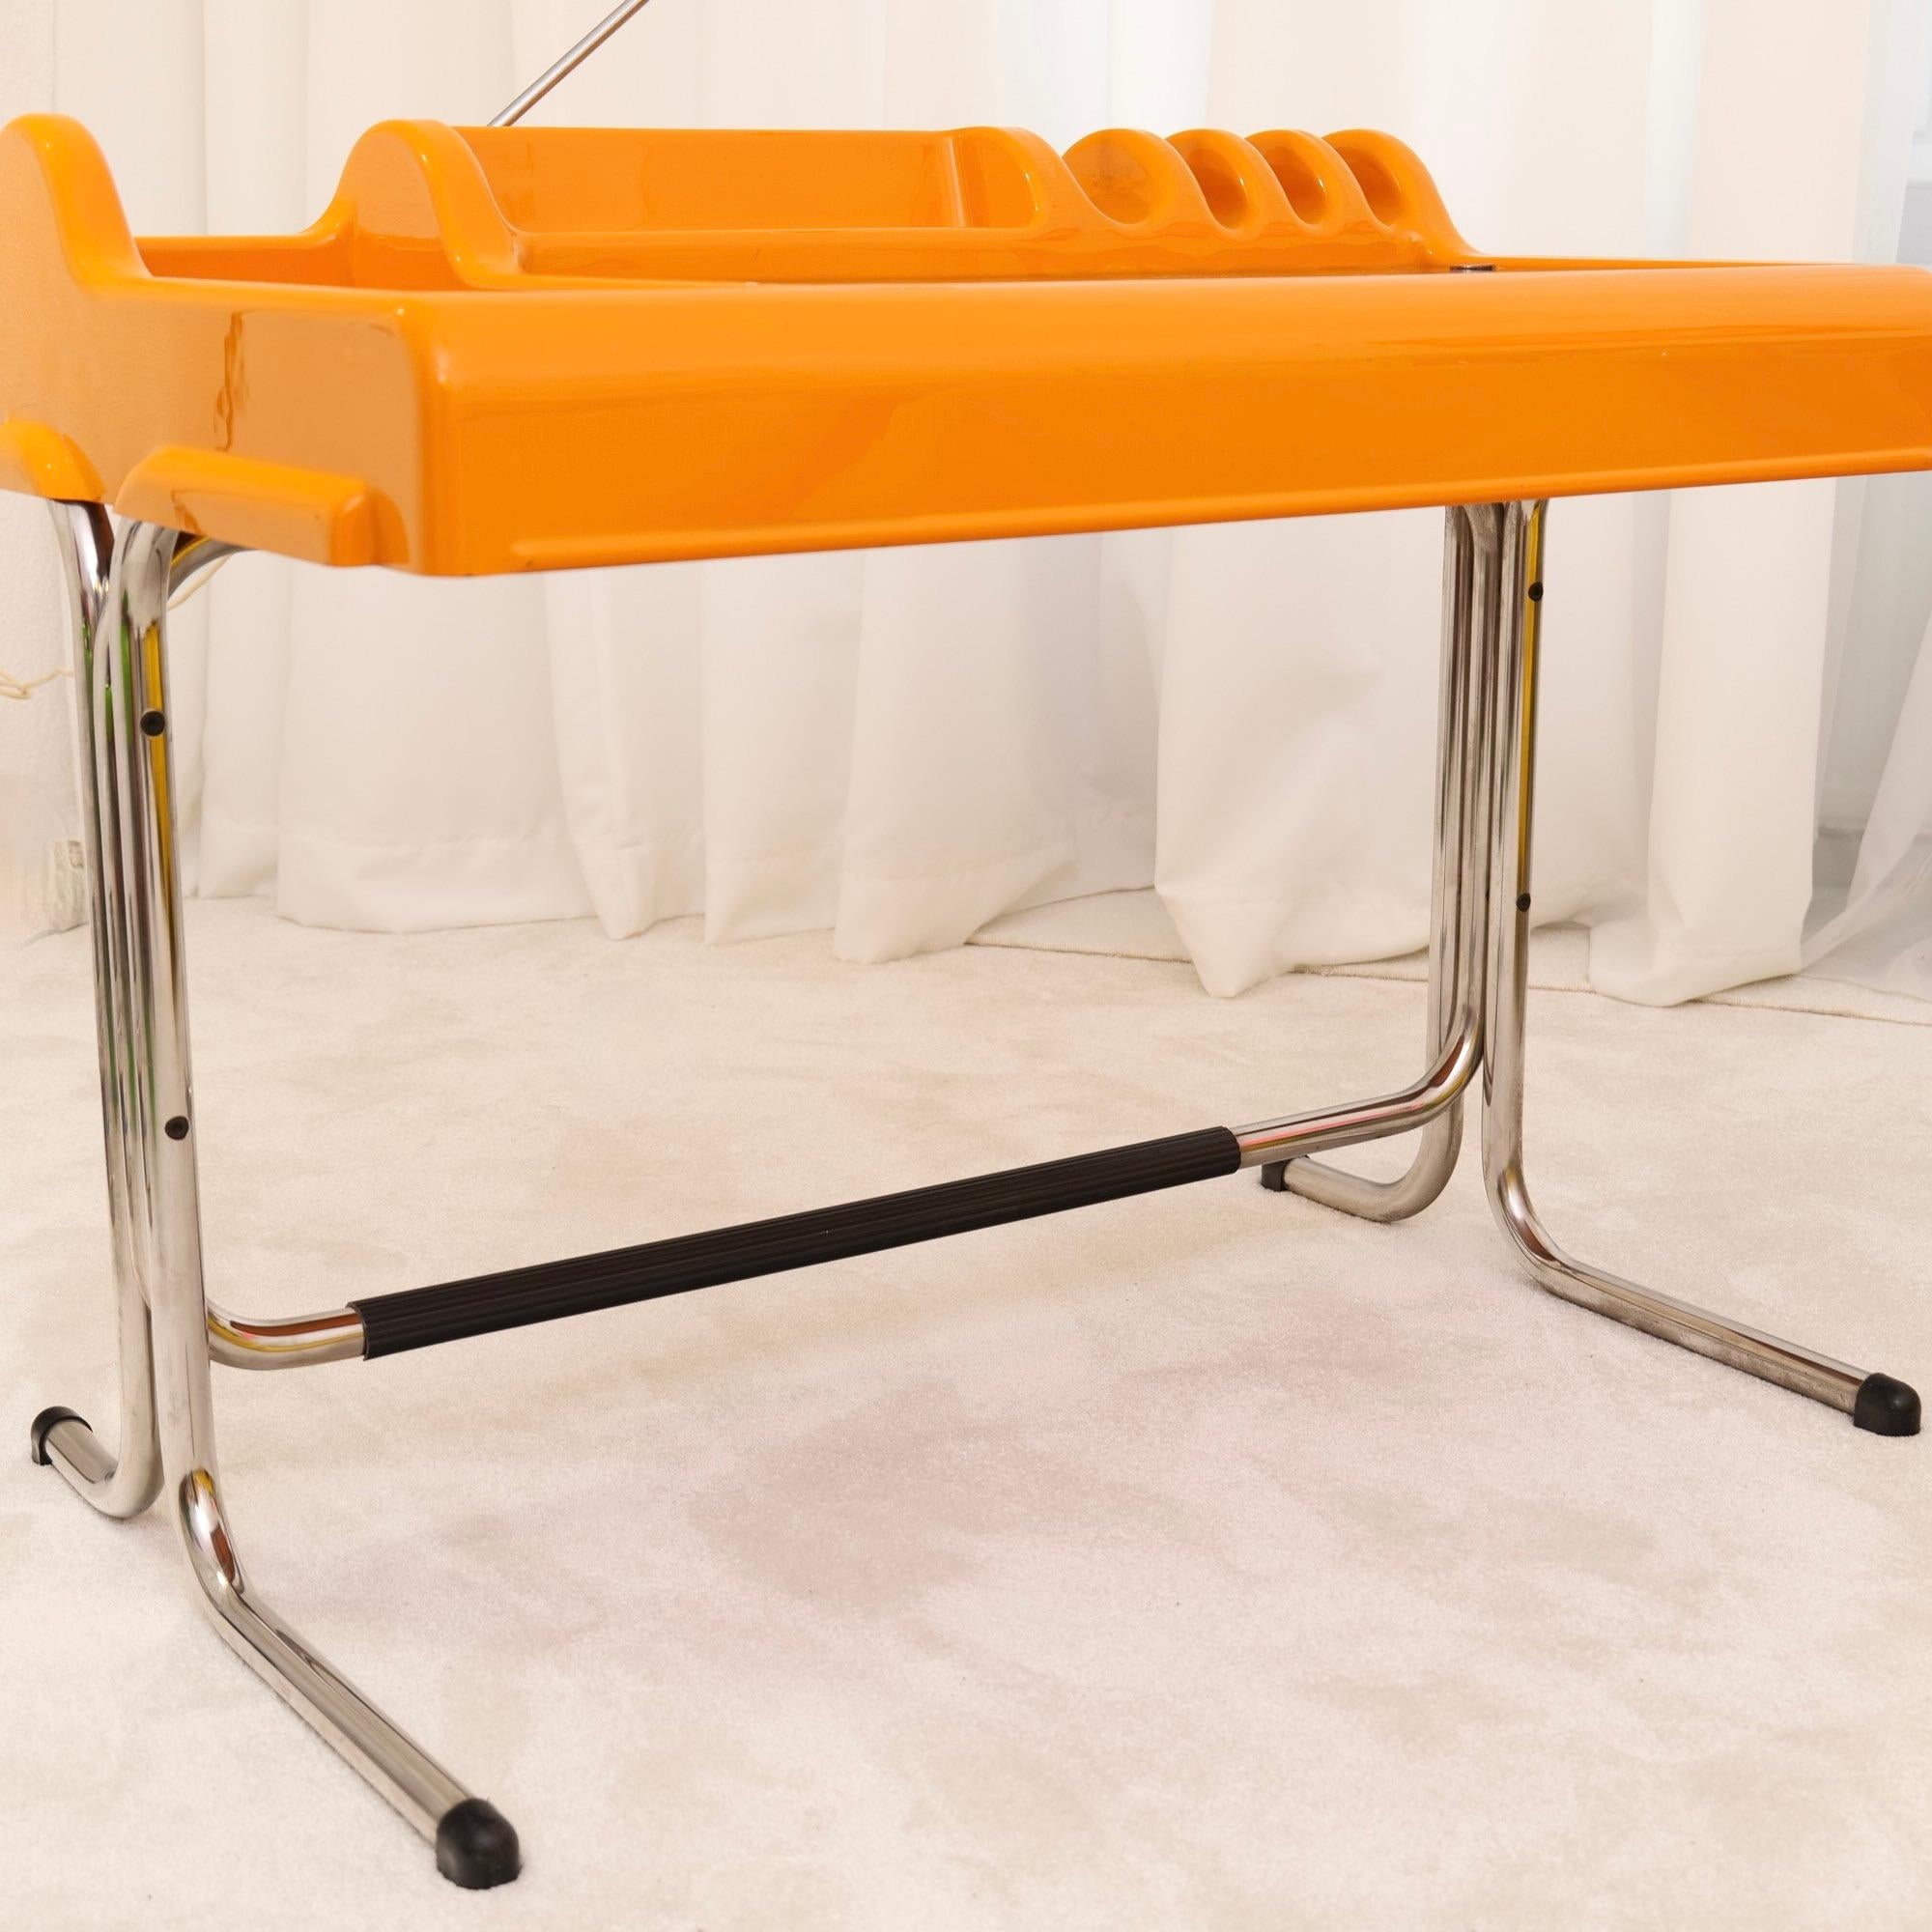 Late 20th Century yellow Orix Desk - Molteni by Nani Prina & Vittorio Parigi - 1970s